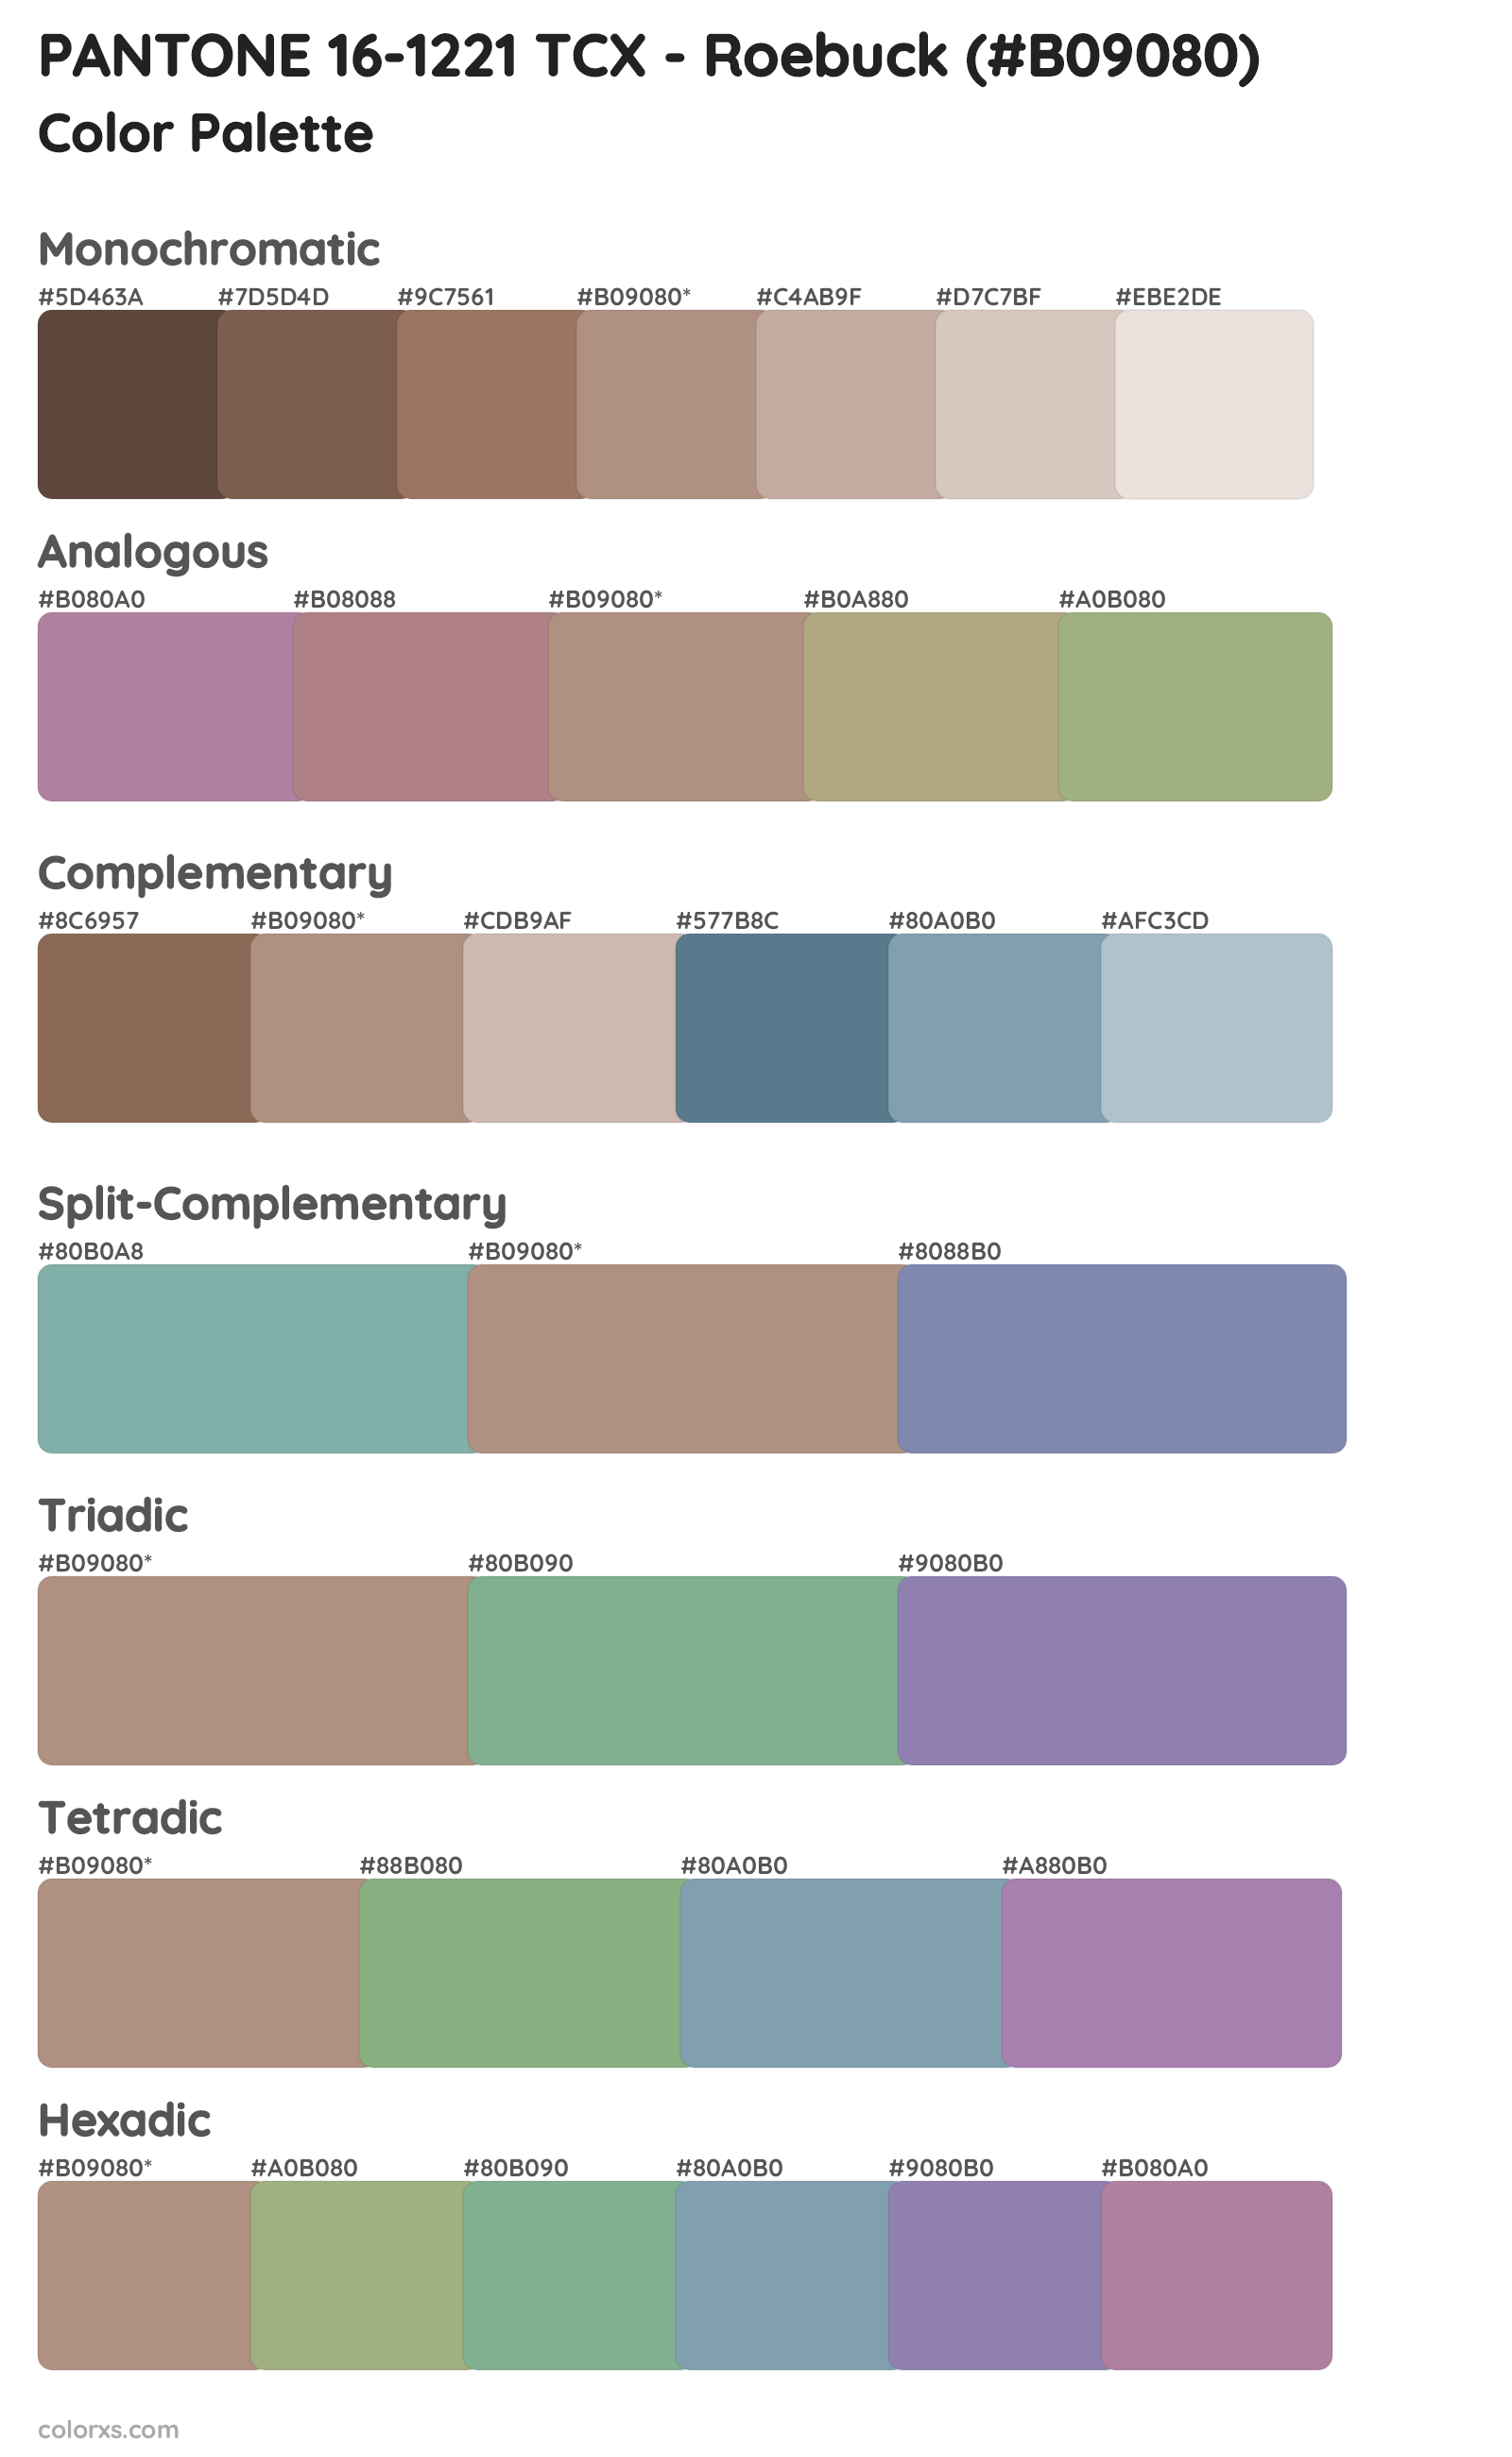 PANTONE 16-1221 TCX - Roebuck Color Scheme Palettes